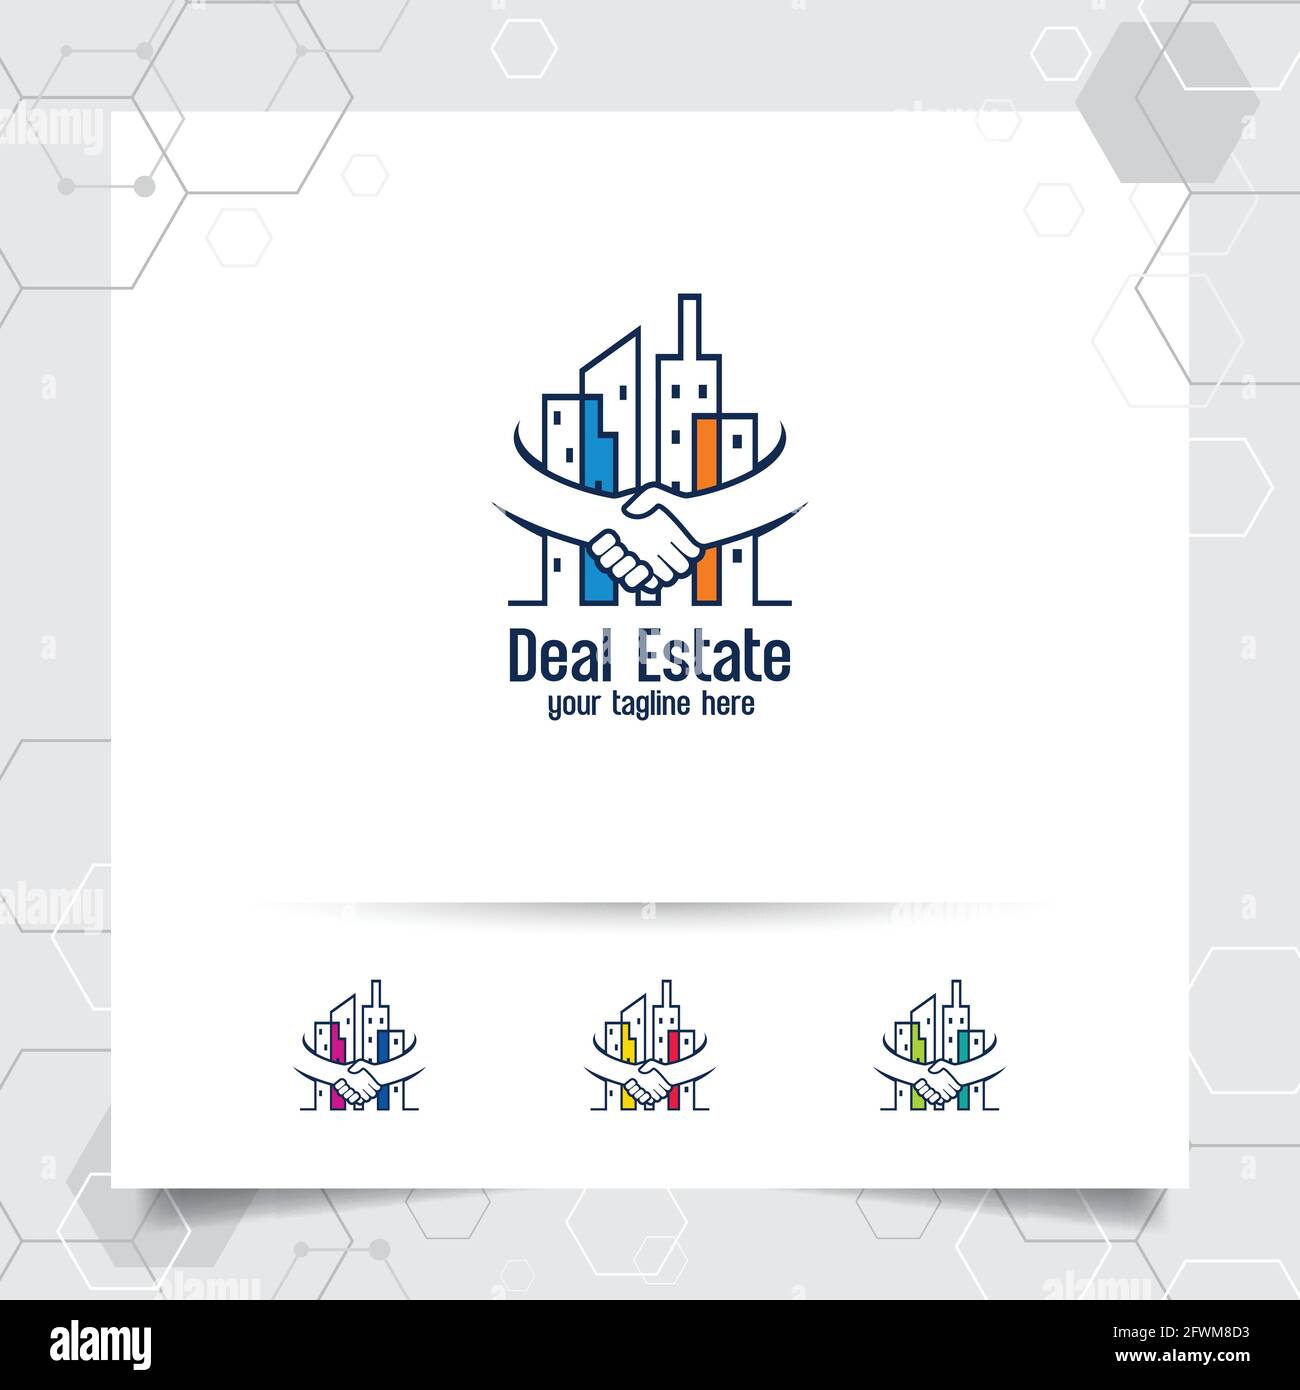 Immobilien-Logo-Design-Vektor mit Konzept der Deal und Handschlag. Logo-Vektor für Immobilien und Wohnungen für Hotel, Residenz, Bau und Vertrag Stock Vektor